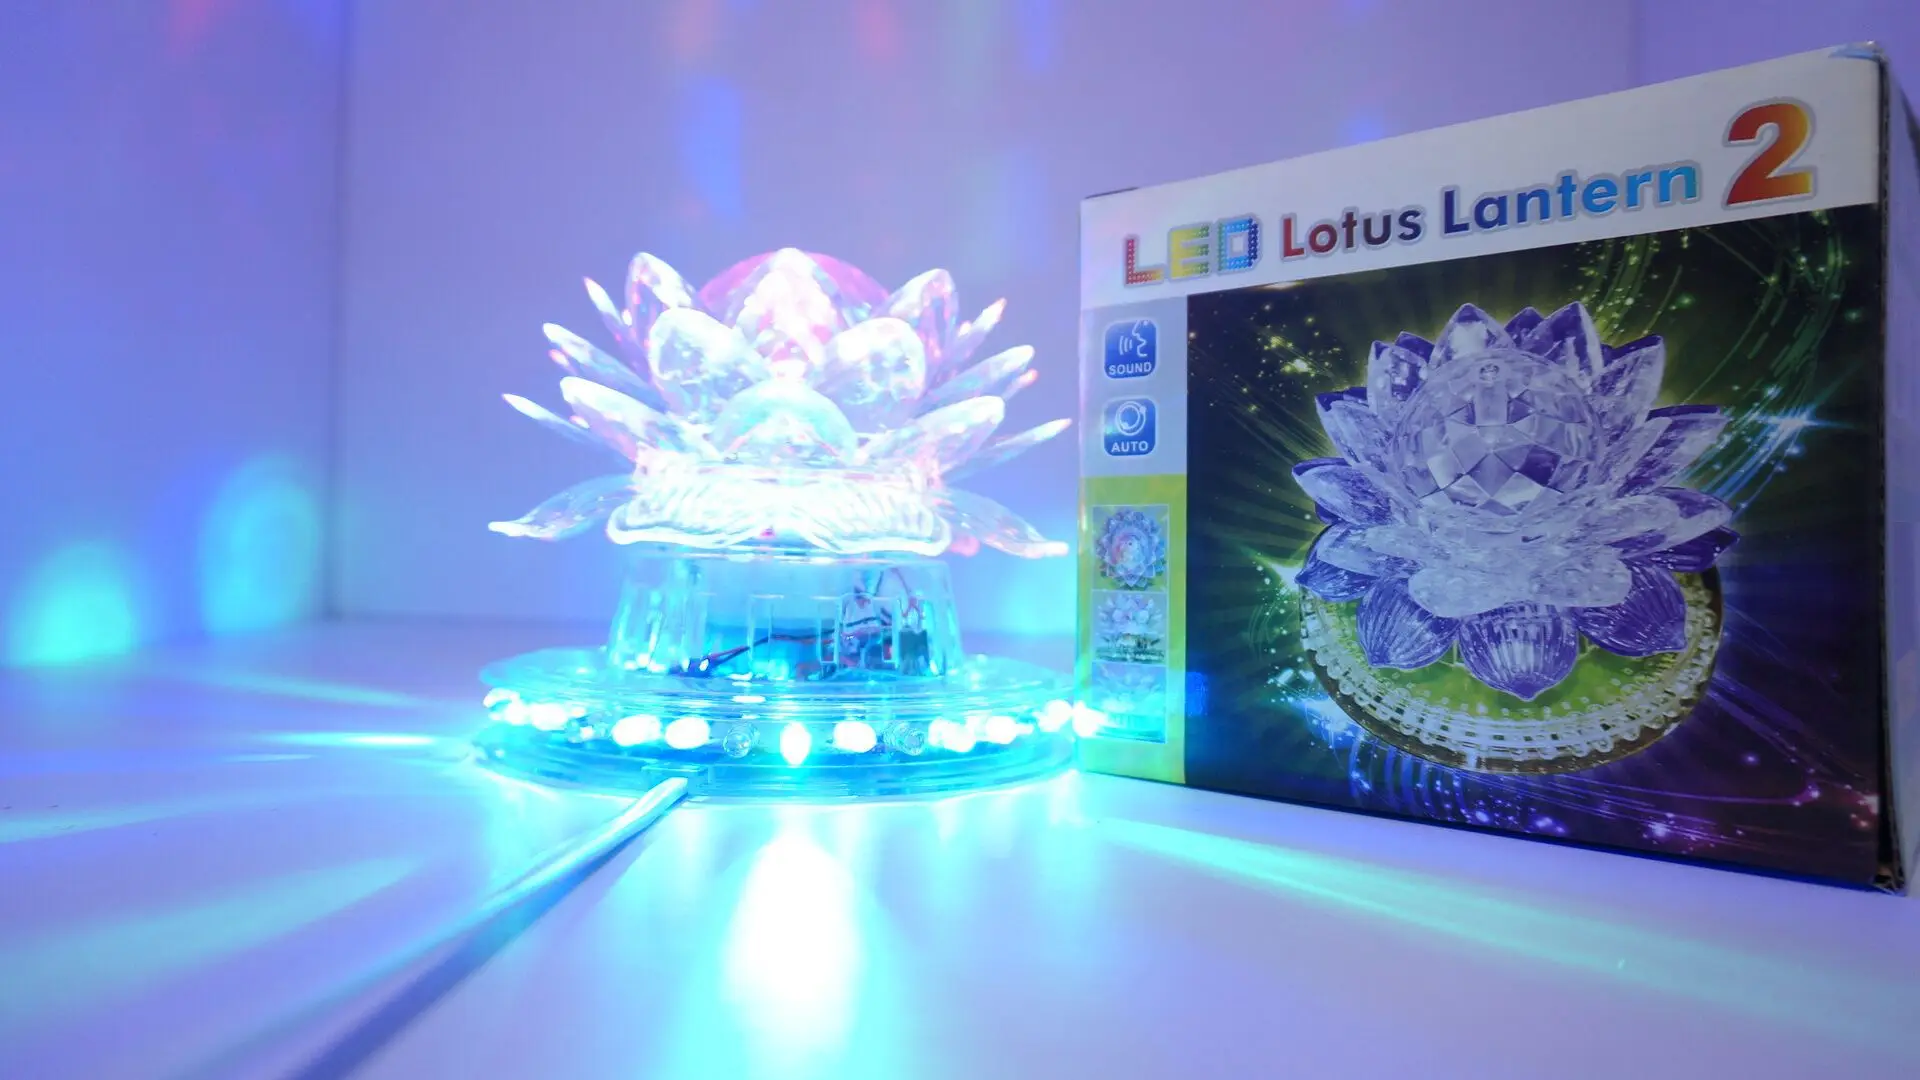 led lotus lantern